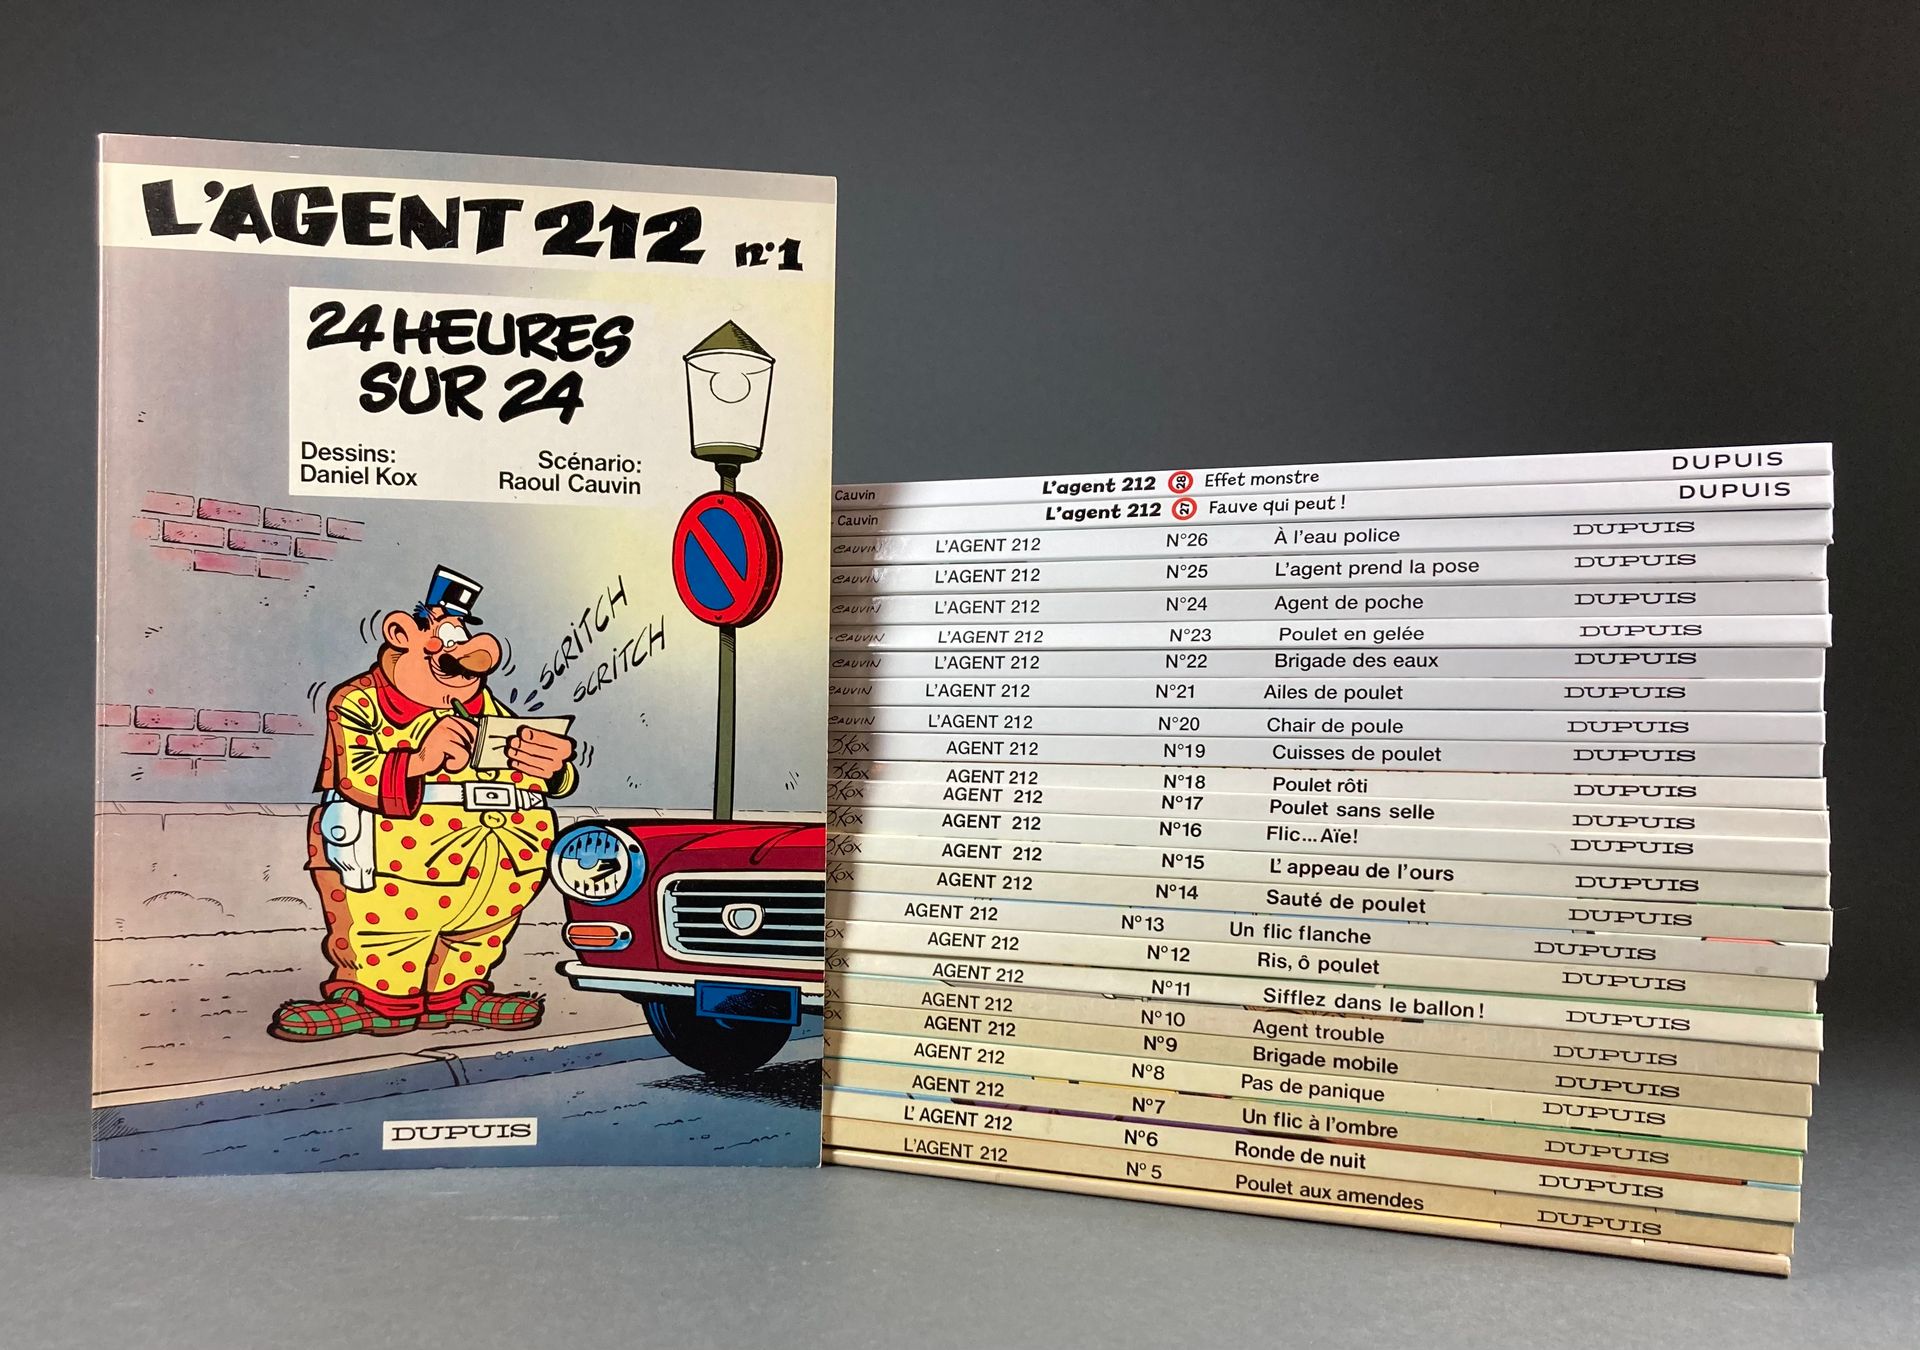 Kox D. - Agent 212 Bände 1 bis 28 (außer 3), von 24 heures sur 24 (1981) bis Eff&hellip;